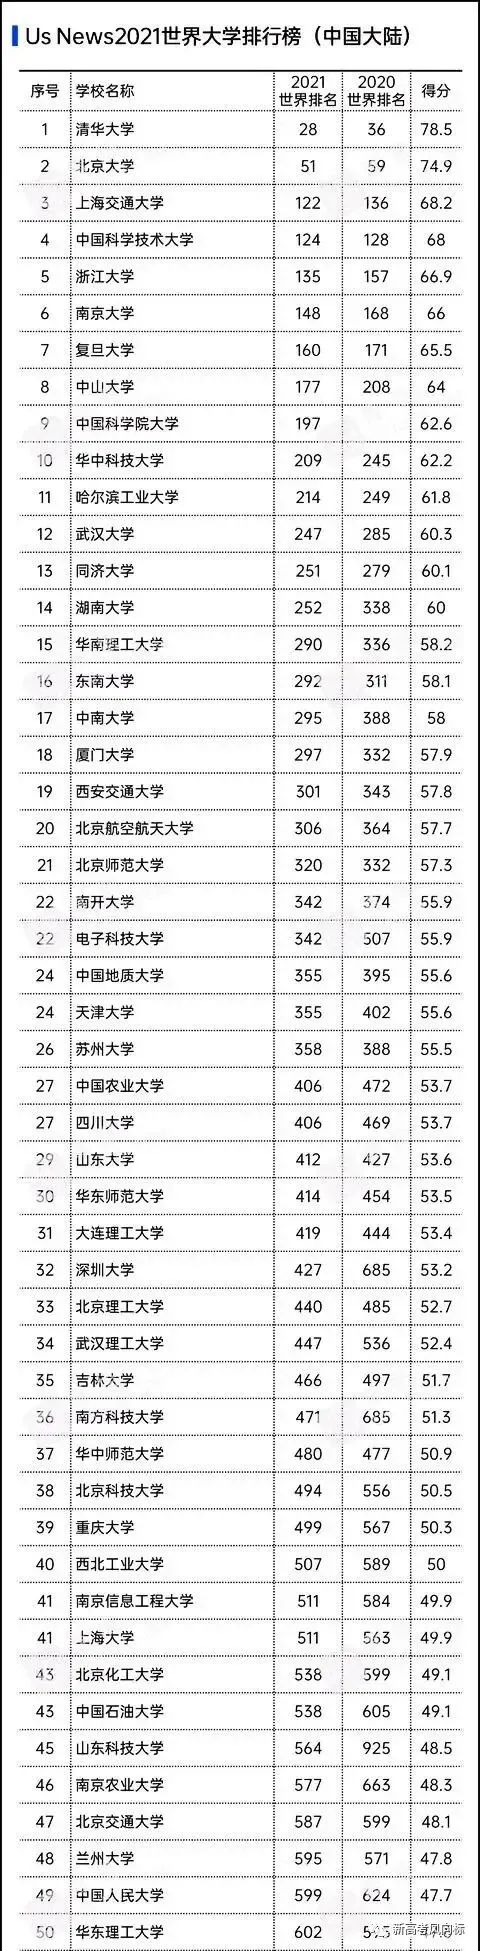 2020_2021crwu世界大学排名_北京大学仅第四!2020-2021世界大学学术(2)